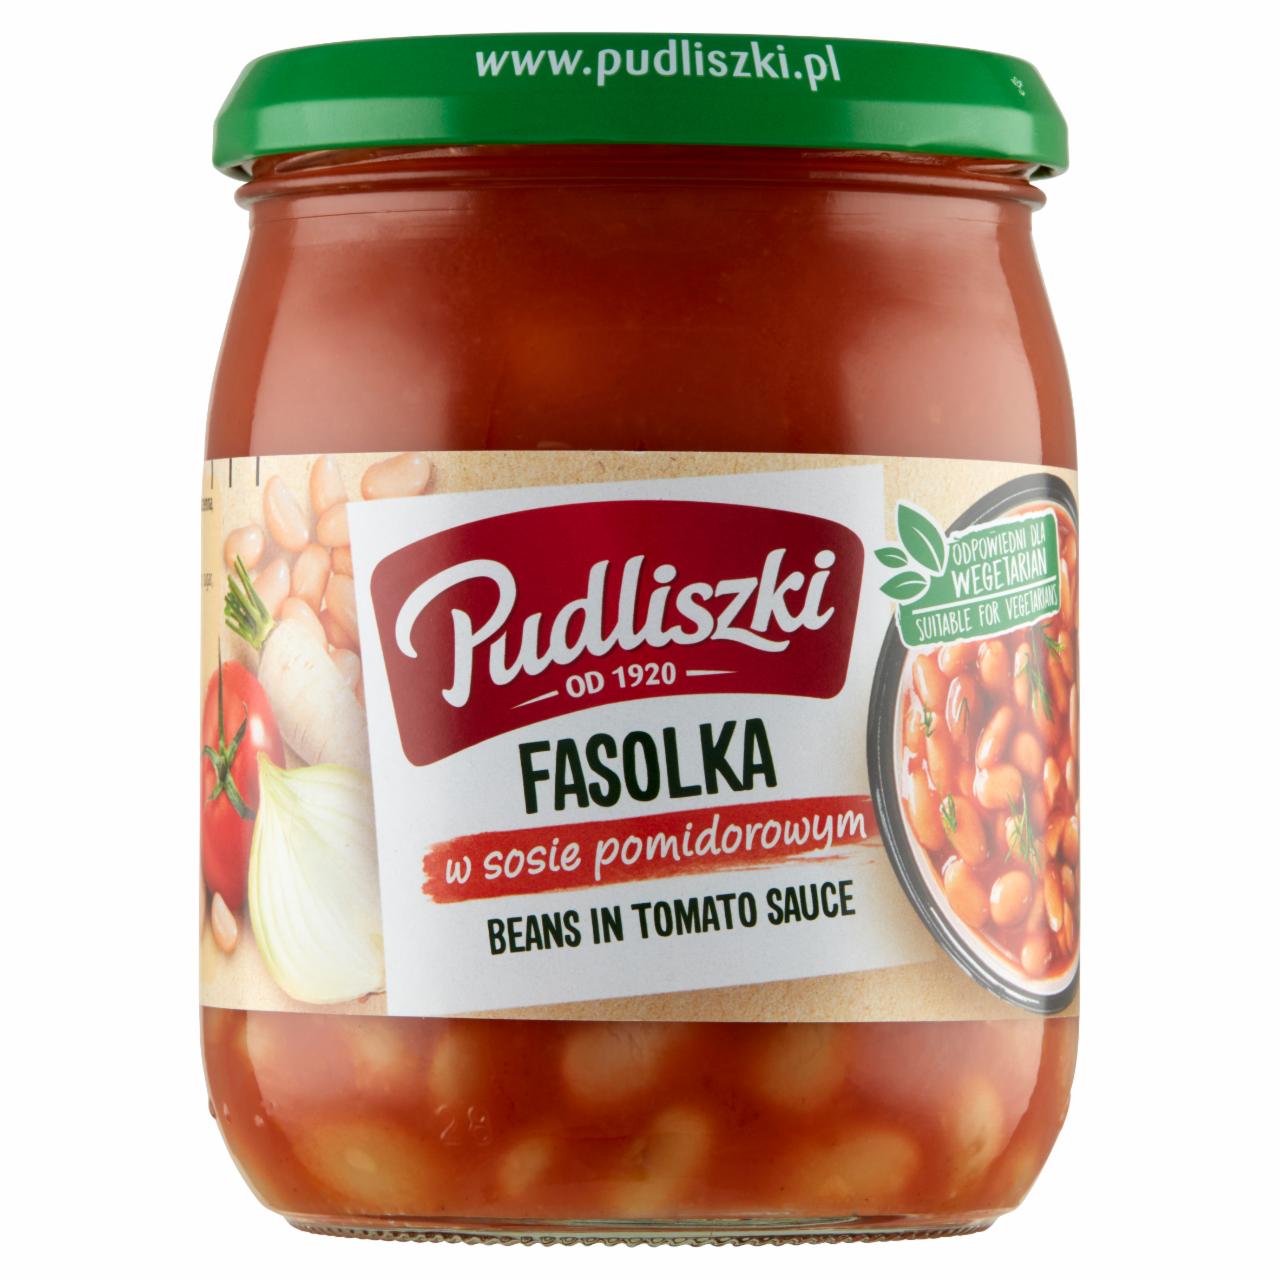 Zdjęcia - Fasolka w sosie pomidorowym 500 g Pudliszki